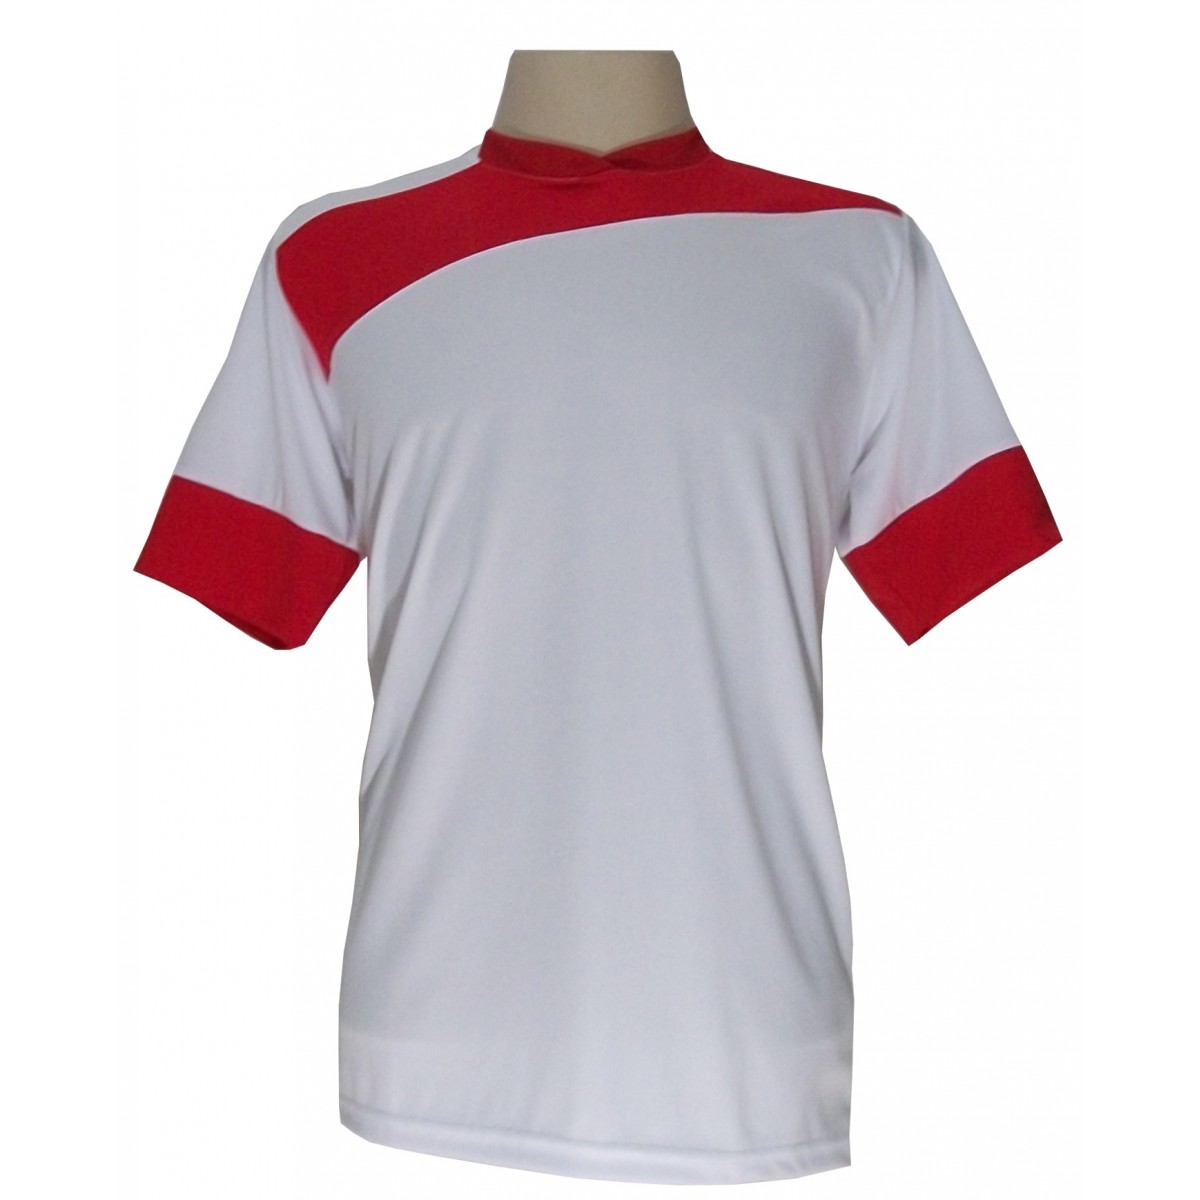 Uniforme Esportivo com 14 camisas modelo Sporting Branco/Vermelho + 14 calções modelo Madrid + 1 Goleiro + Brindes